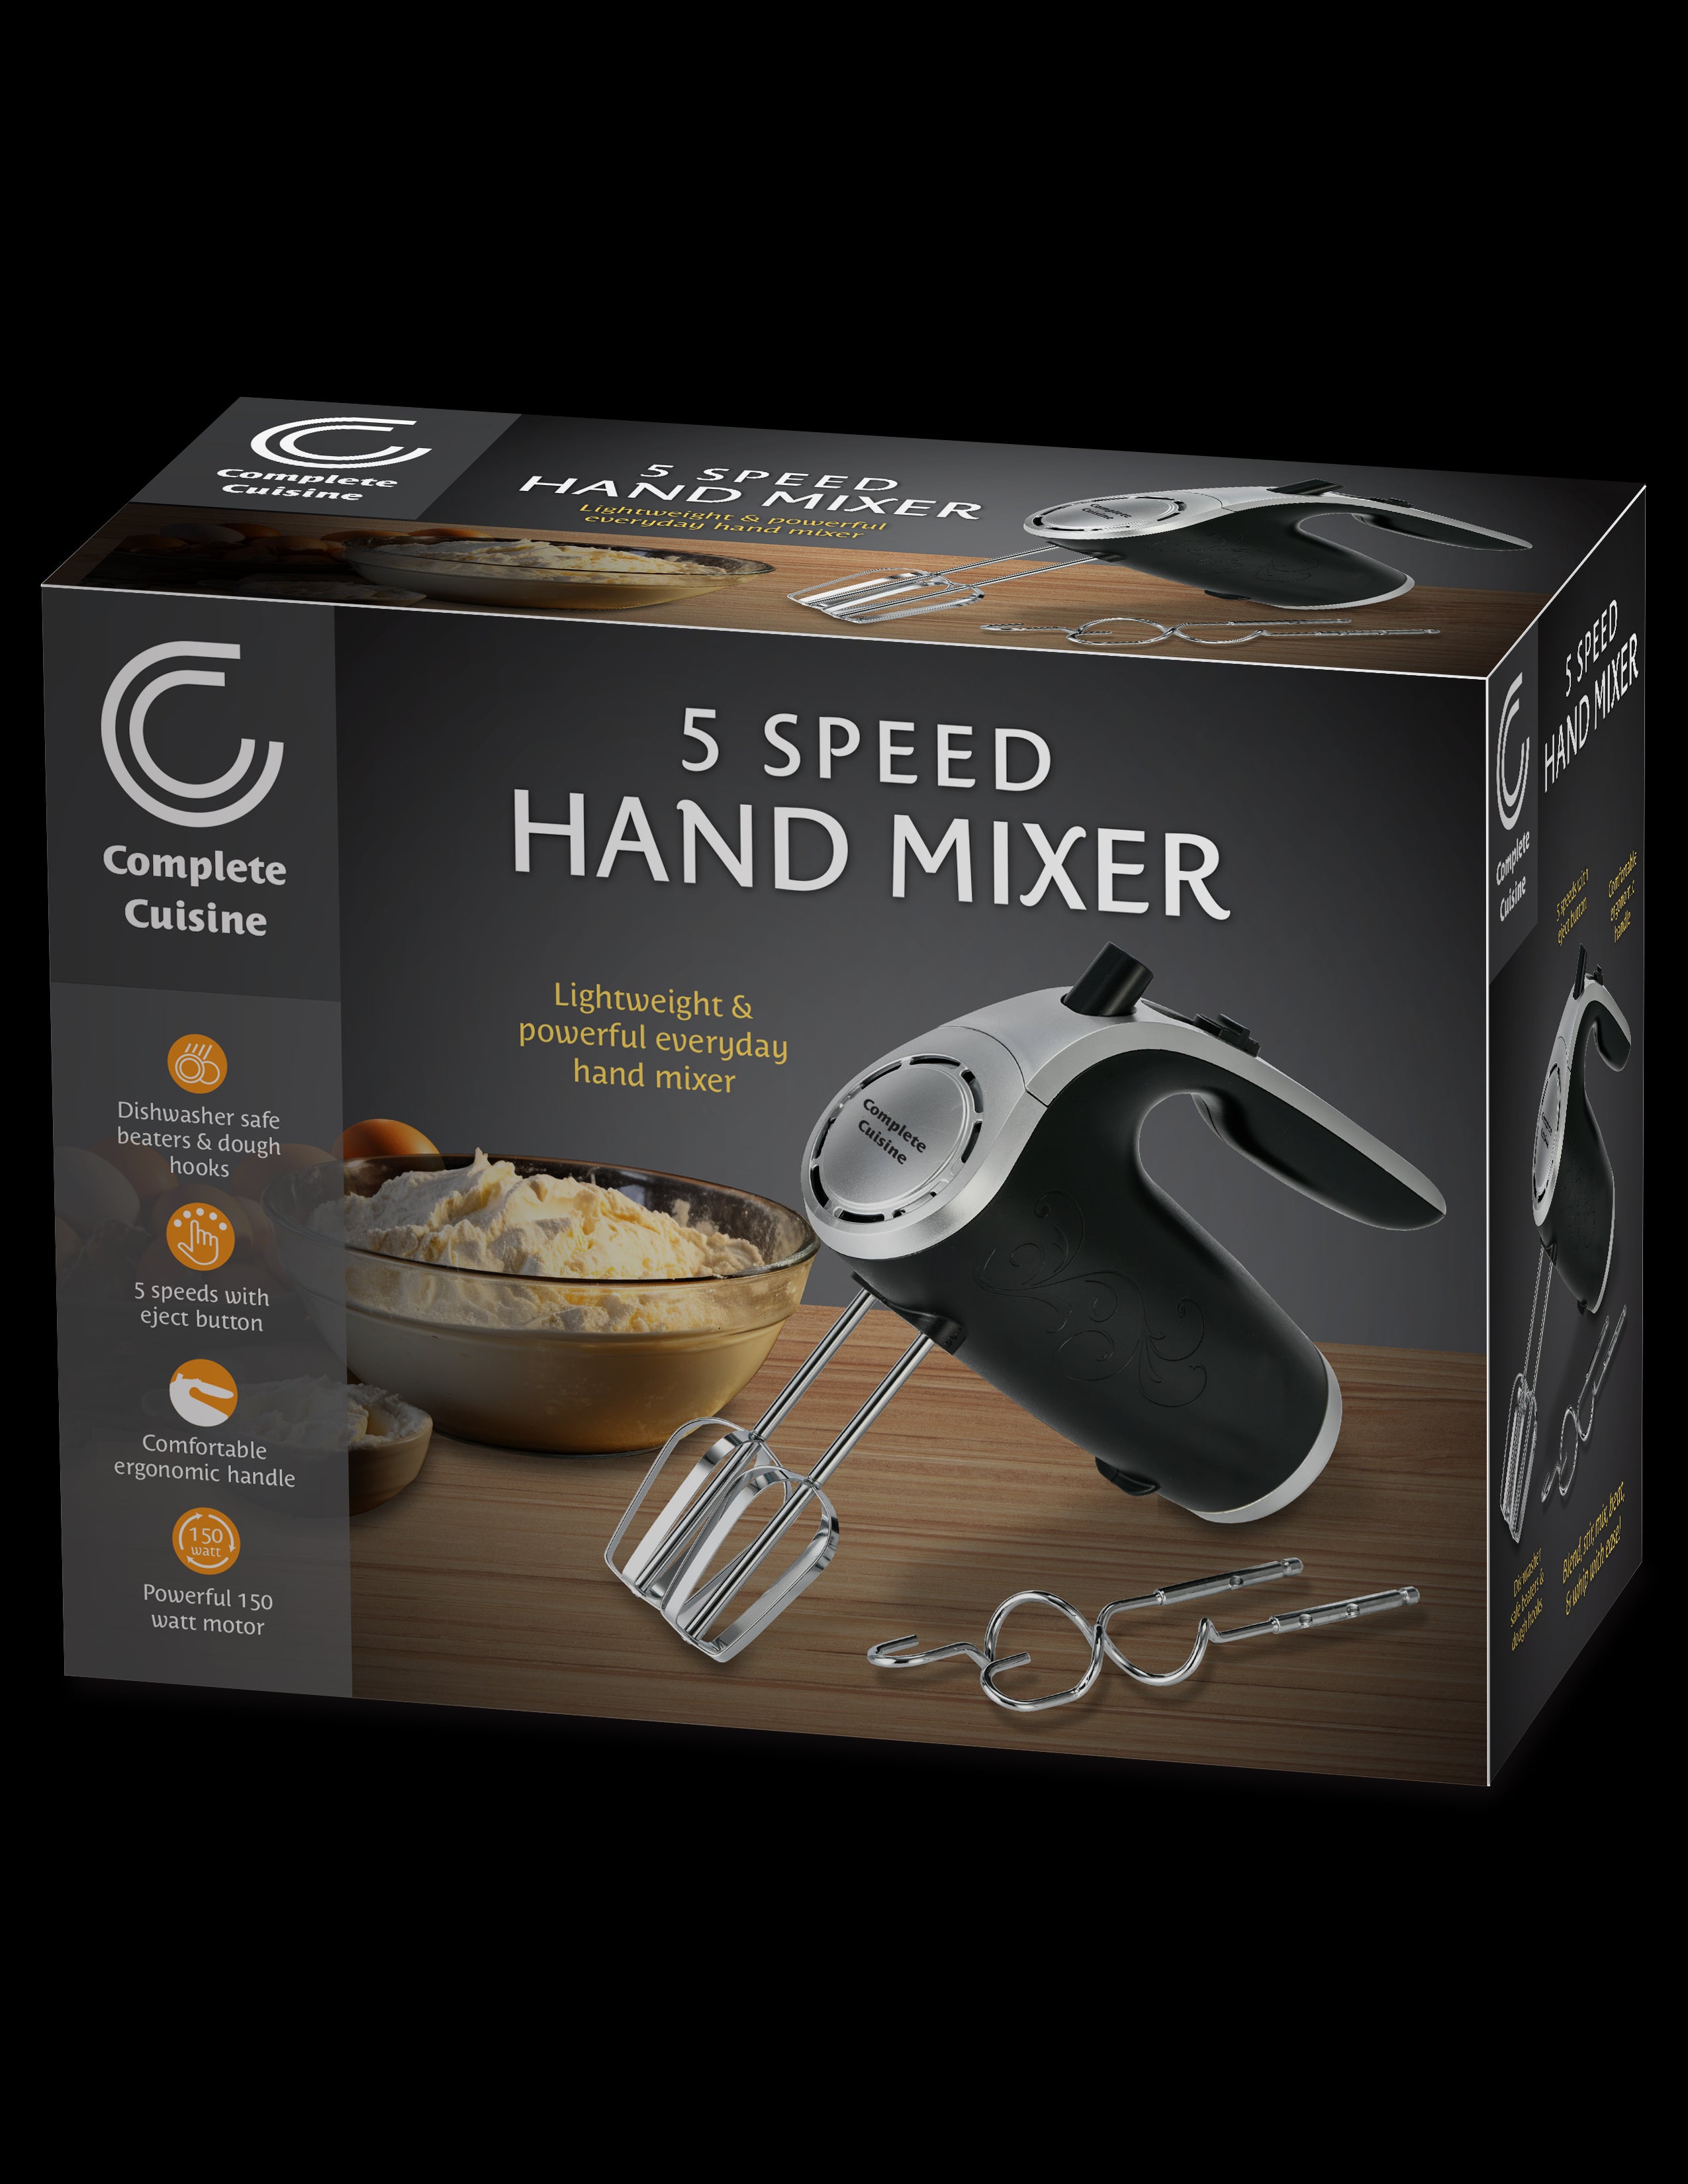 Complete Cuisine 5 Speed Hand Mixer